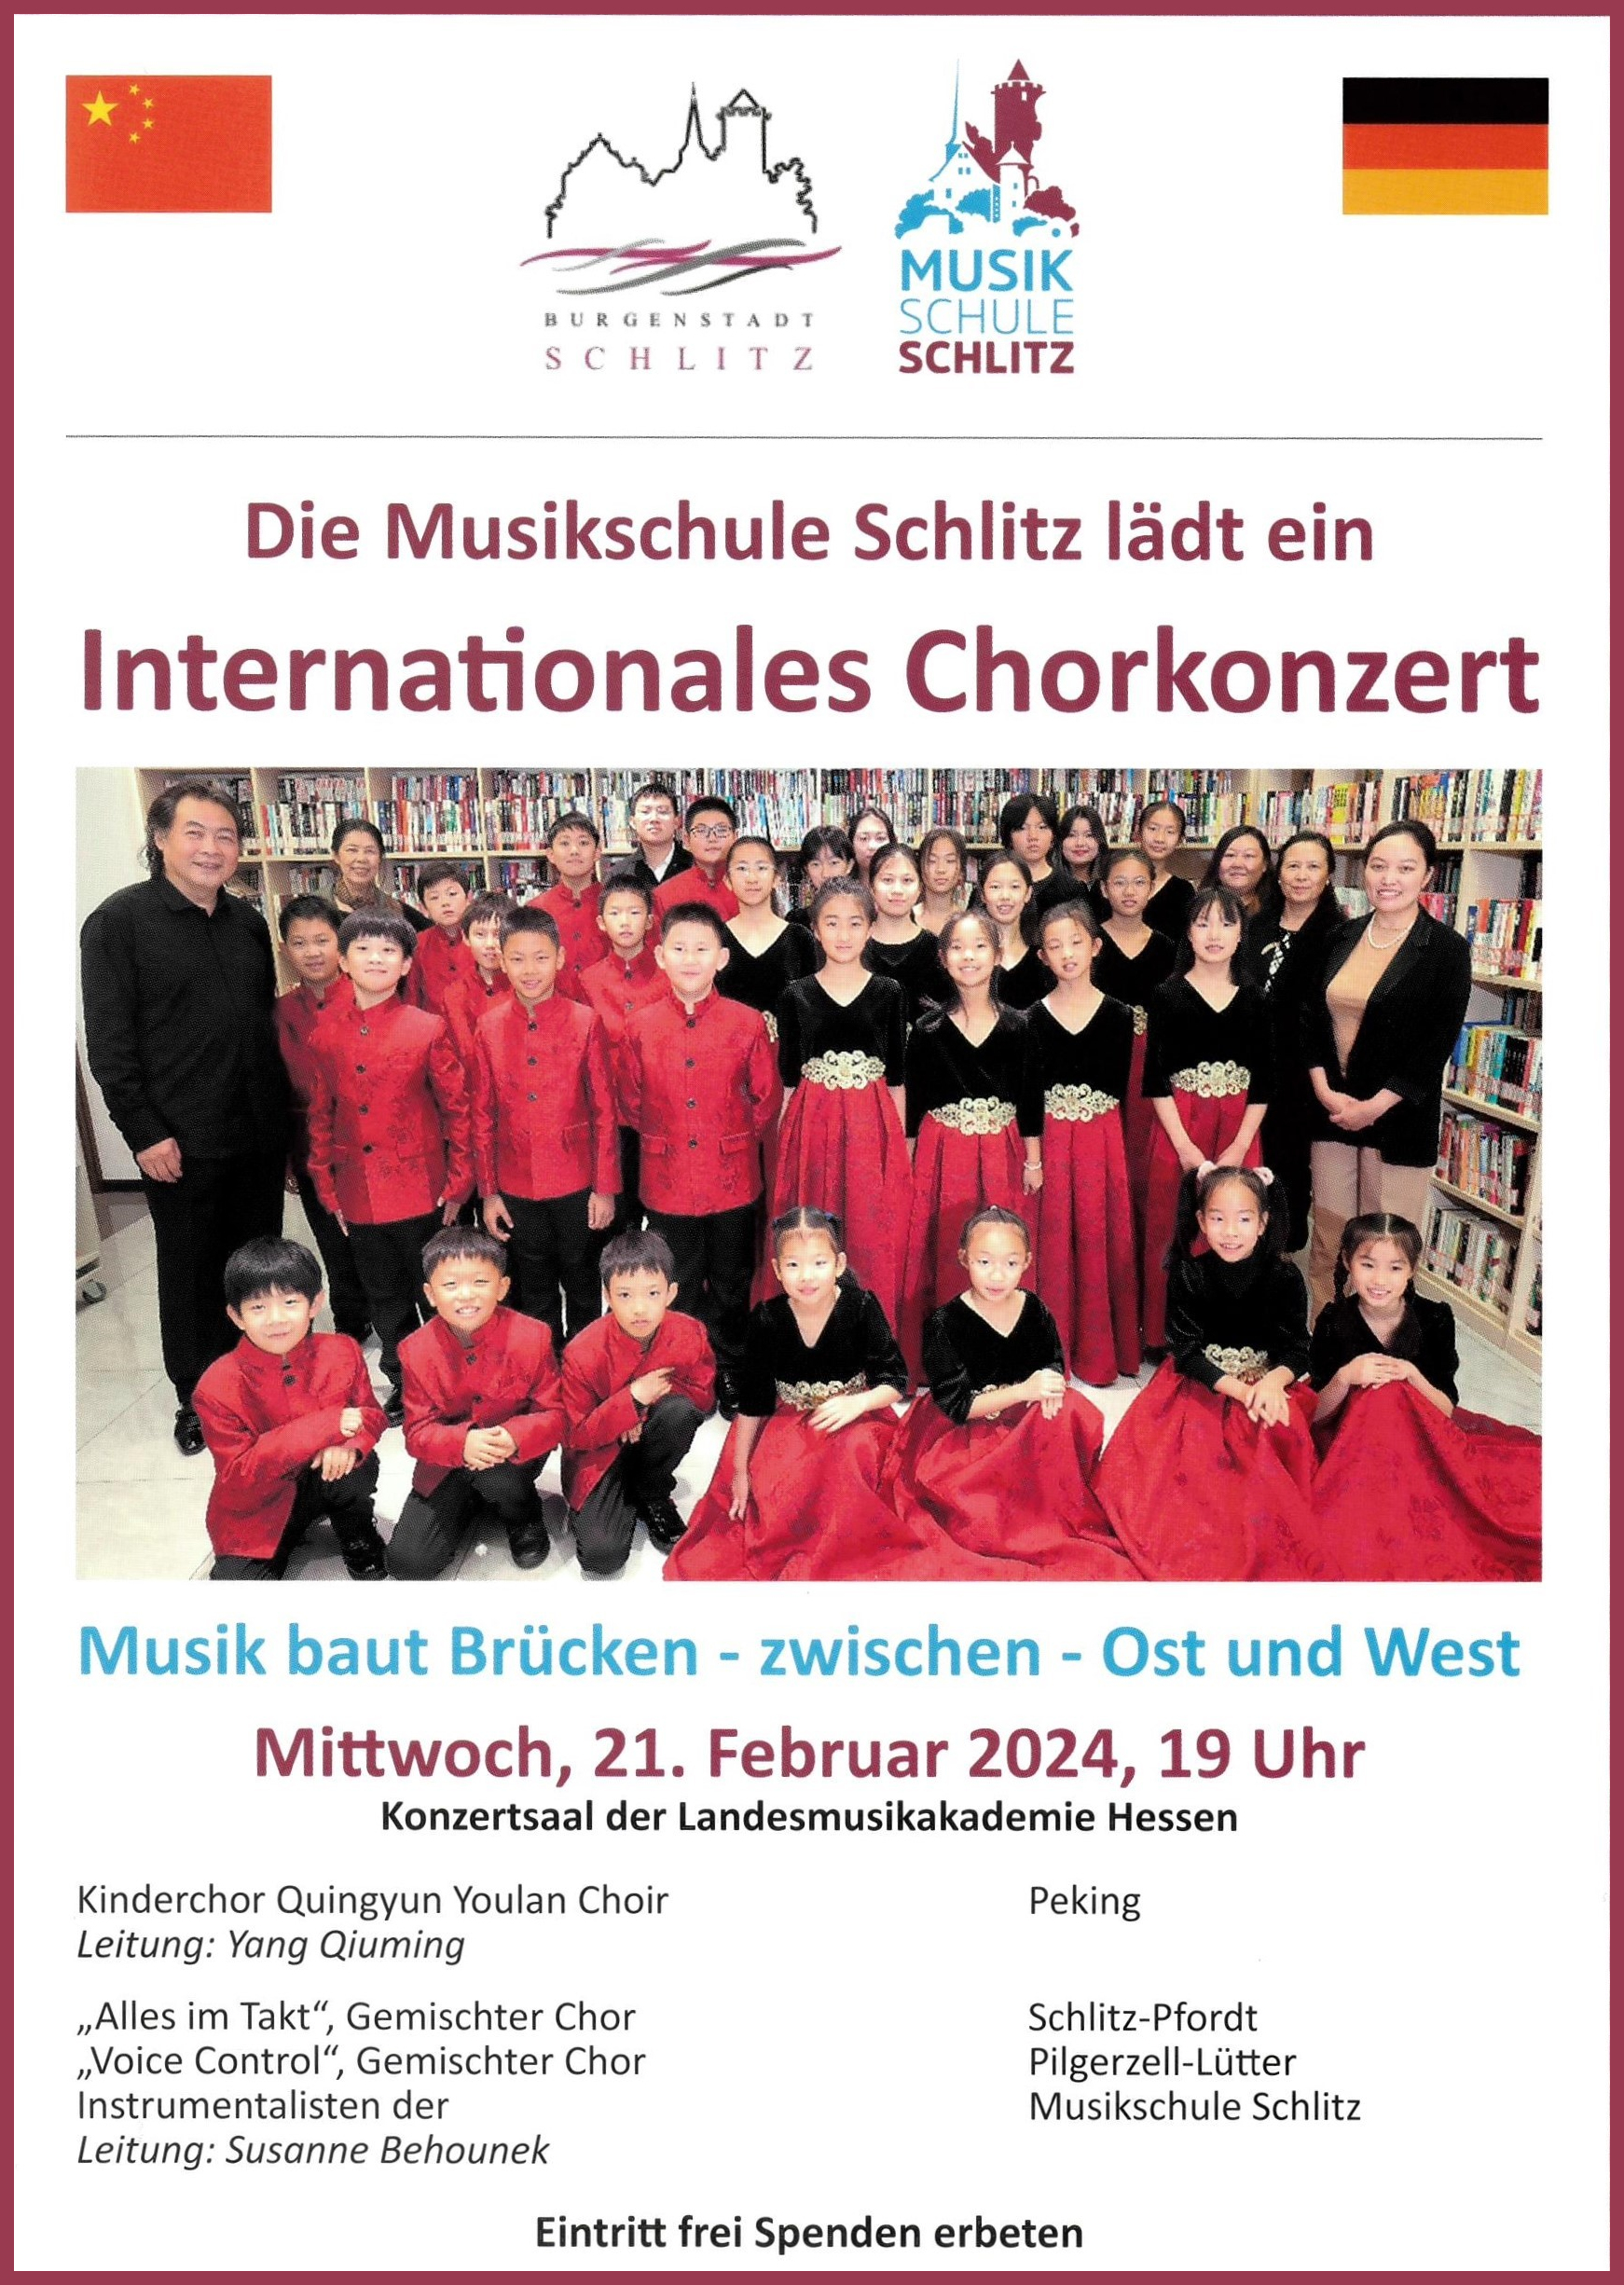 Internationales Chorkonzert mit chinesischem Kinderchor